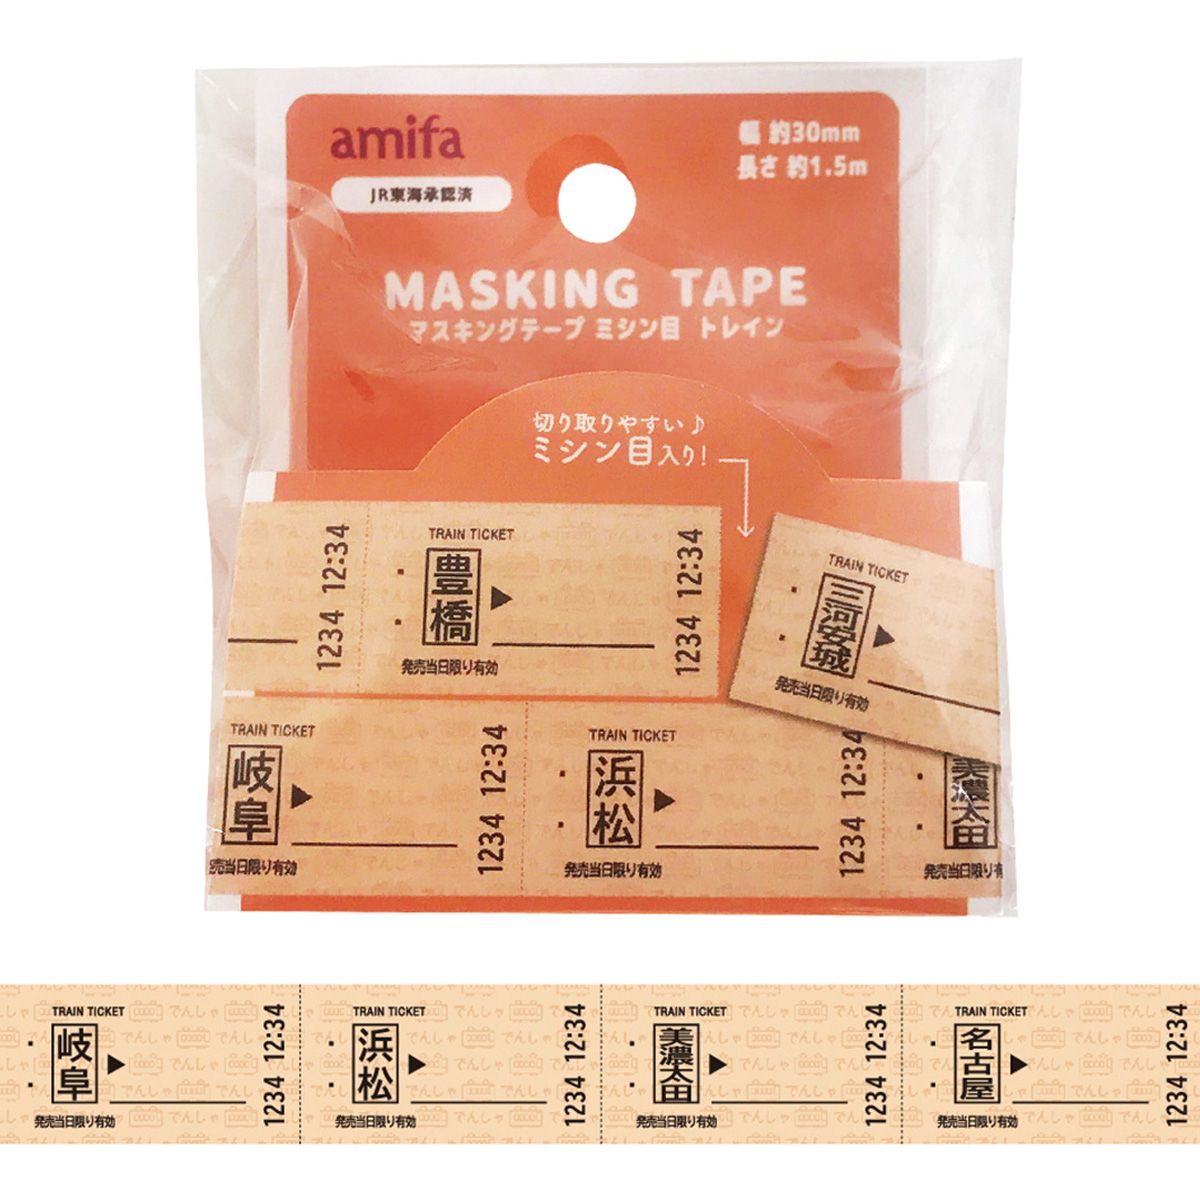 マスキングテープ 30mm×1.5m ミシン目 トレイン 351457